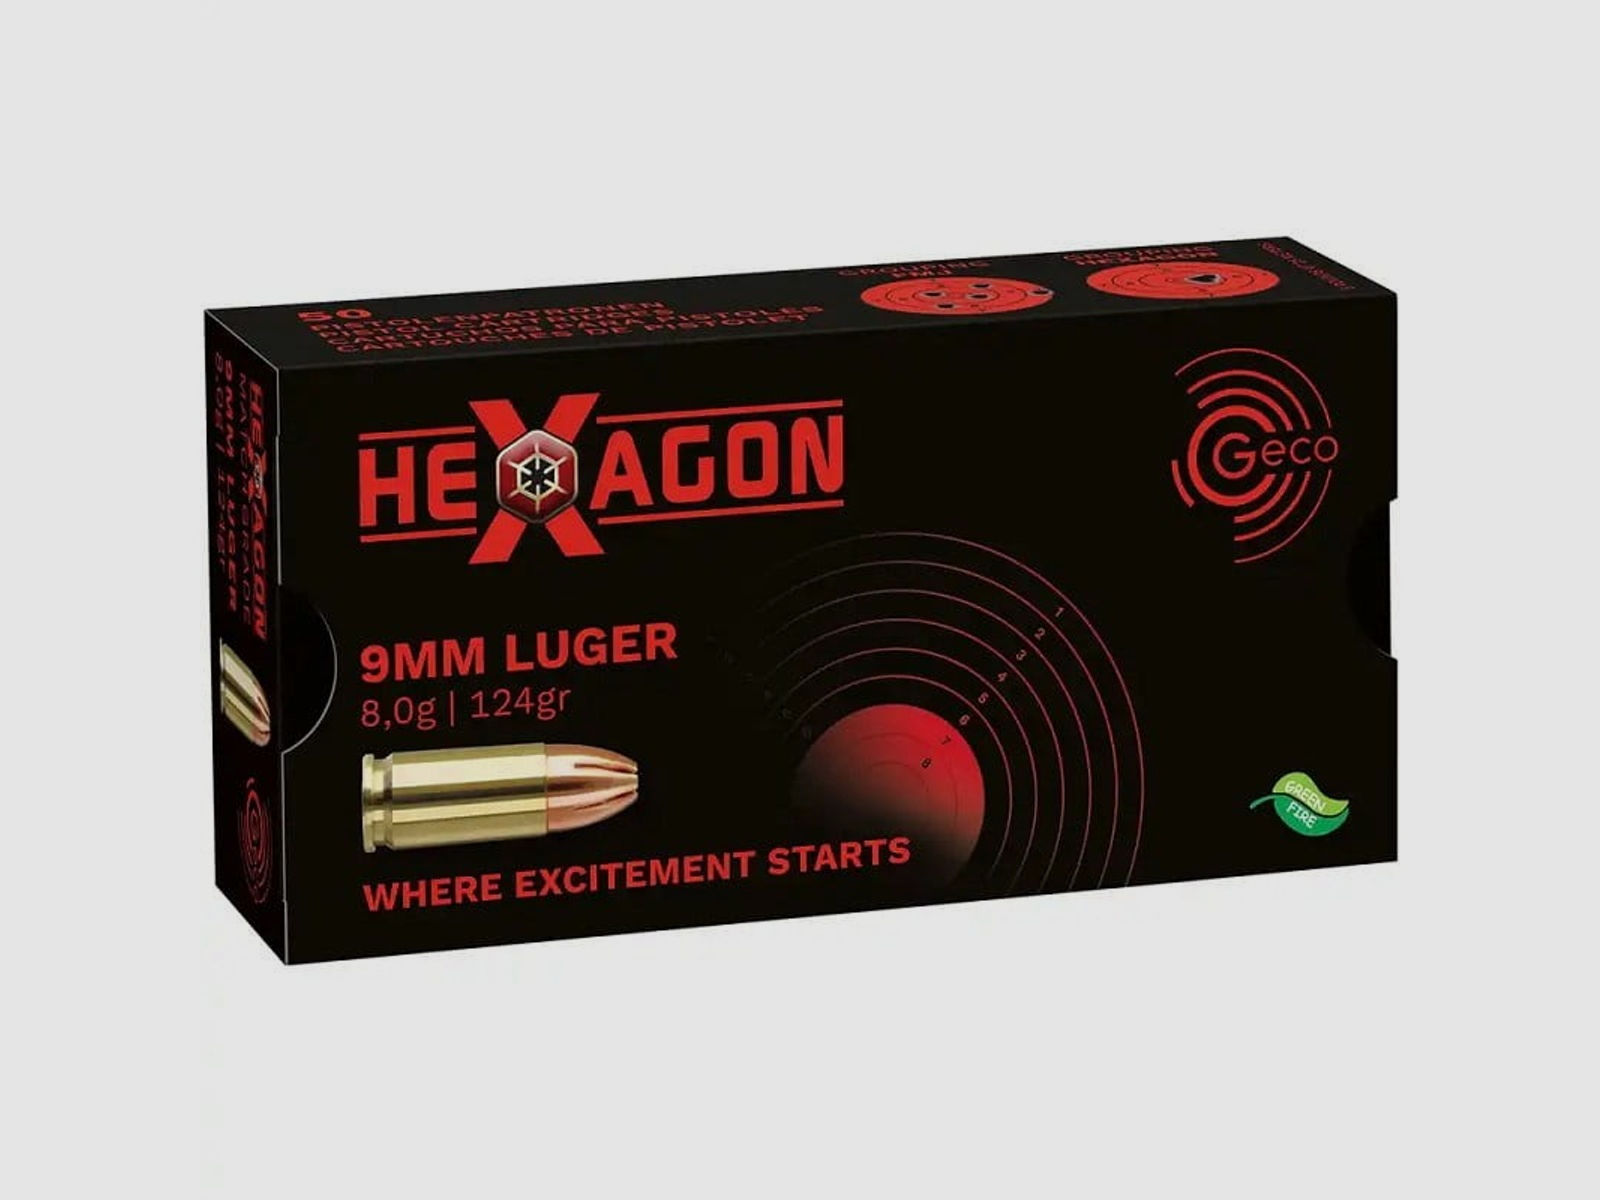 Geco 9mm Luger Hexagon 124gr.